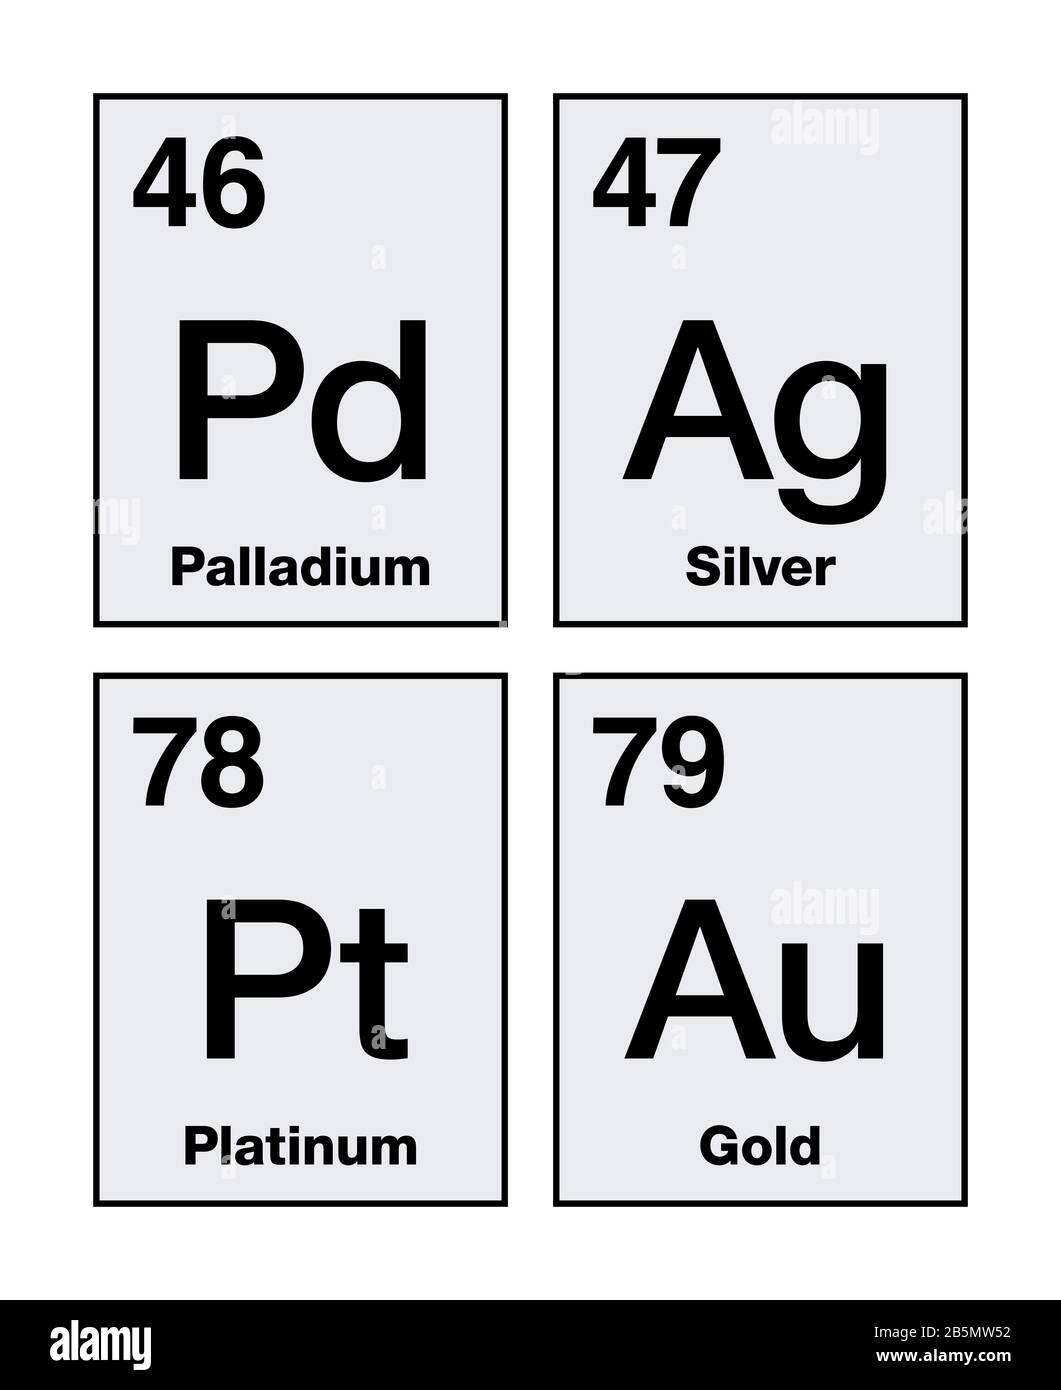 Gold, Silber, Platin und Palladium im Periodensystem. Auch Edelmetalle, chemische Elemente mit hohem wirtschaftlichen Wert, werden als Währung verwendet. Stockfoto